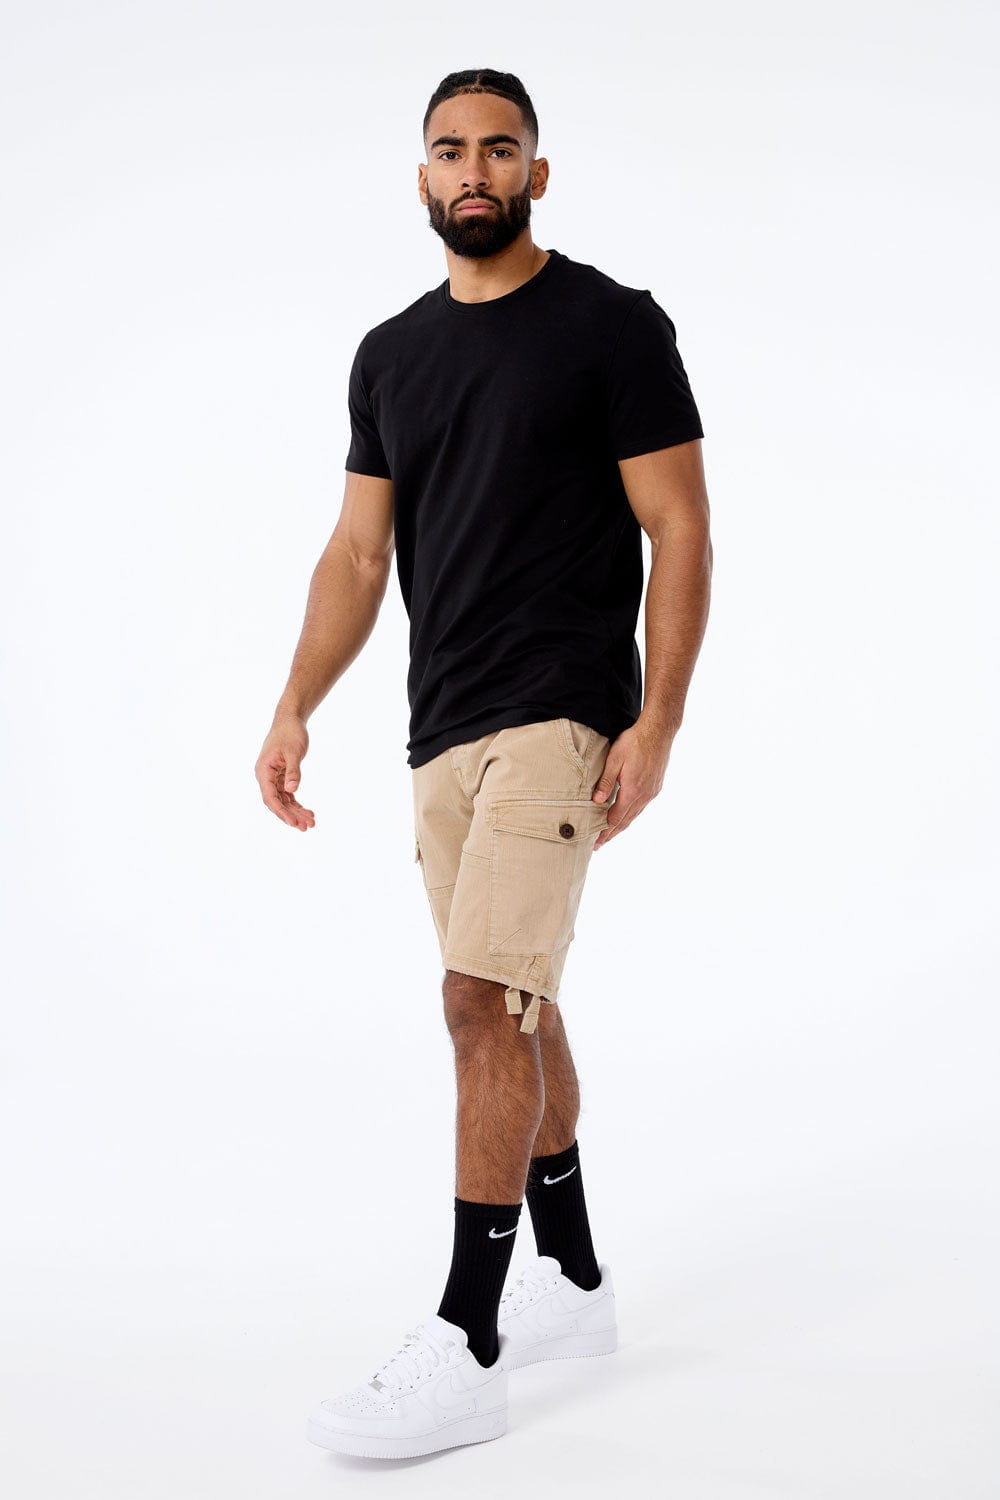 Jordan Craig OG - Cargo Shorts (Khaki)